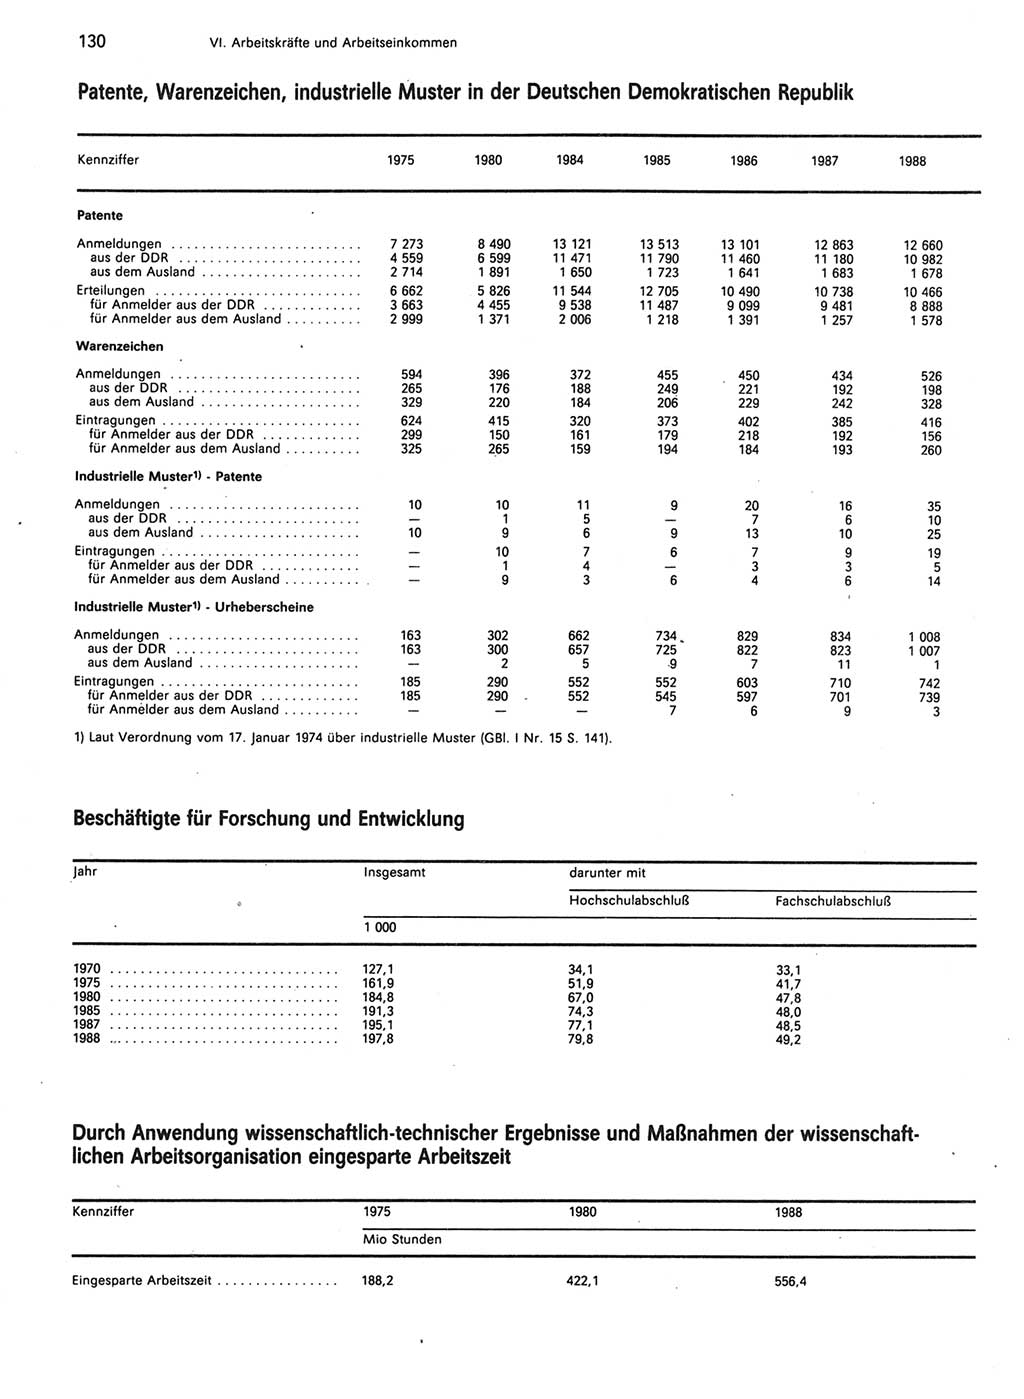 Statistisches Jahrbuch der Deutschen Demokratischen Republik (DDR) 1989, Seite 130 (Stat. Jb. DDR 1989, S. 130)